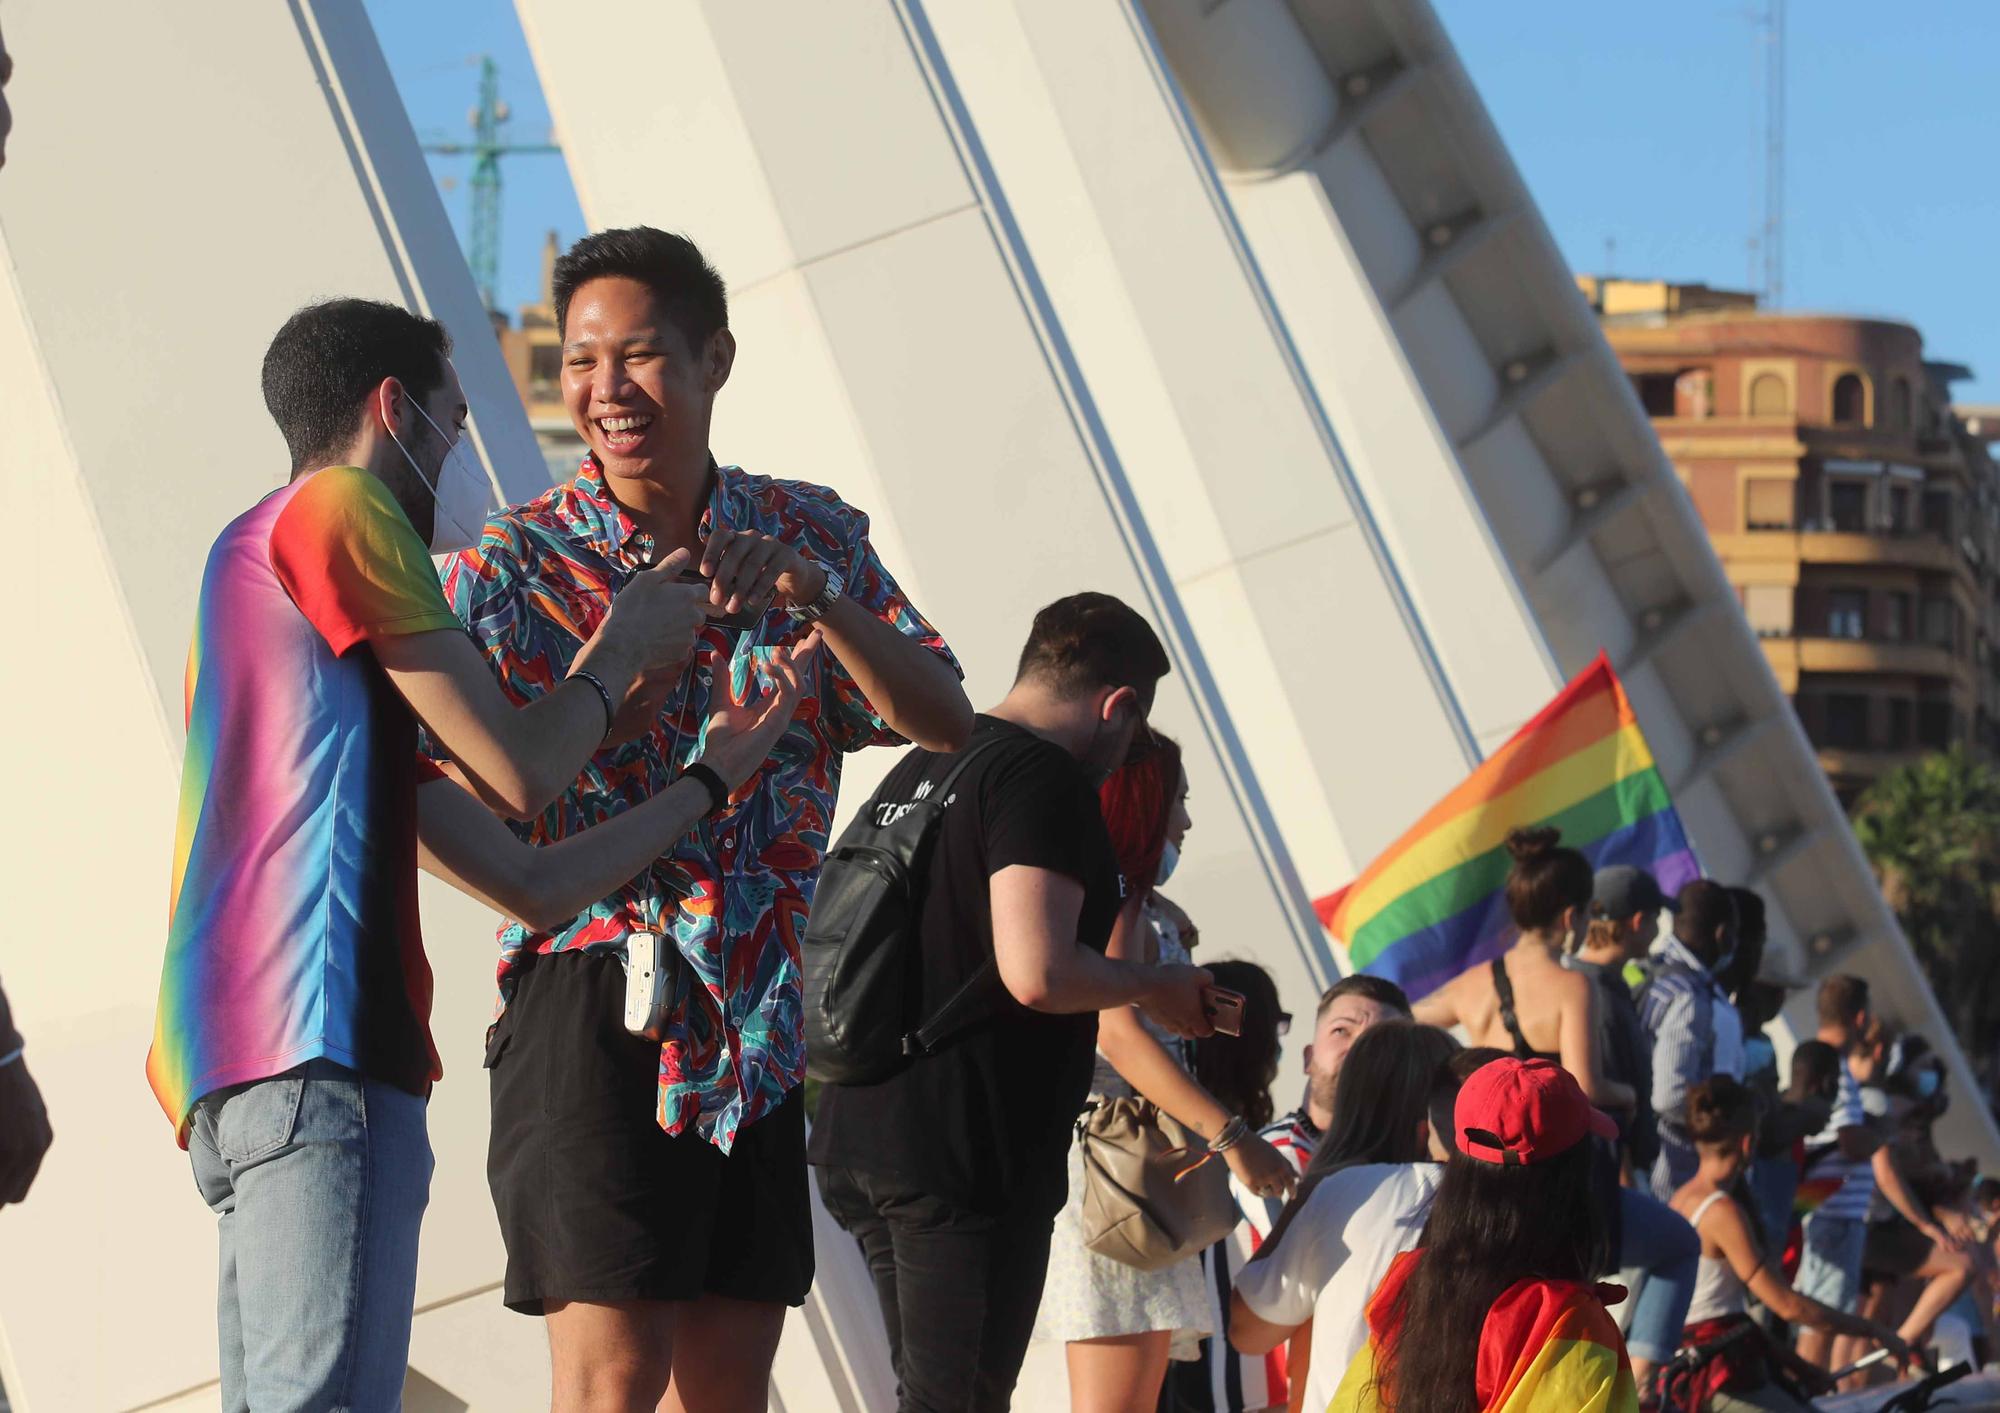 El dia del Orgullo LGTBI+ en València, fue una fiesta